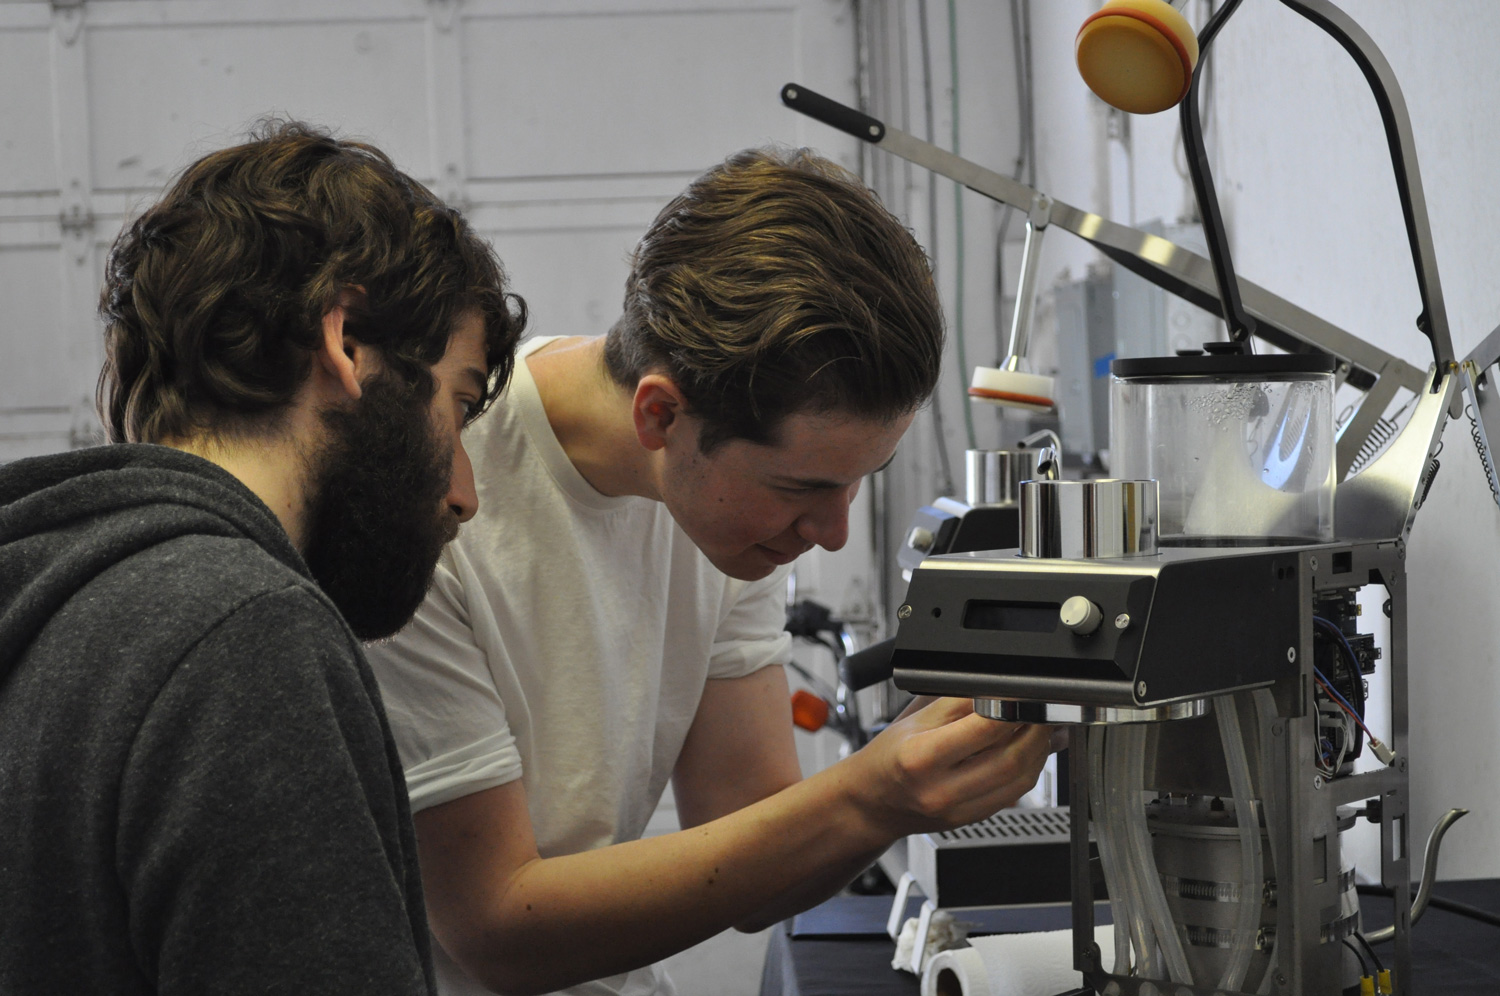 Blossom team member analyze coffee maker